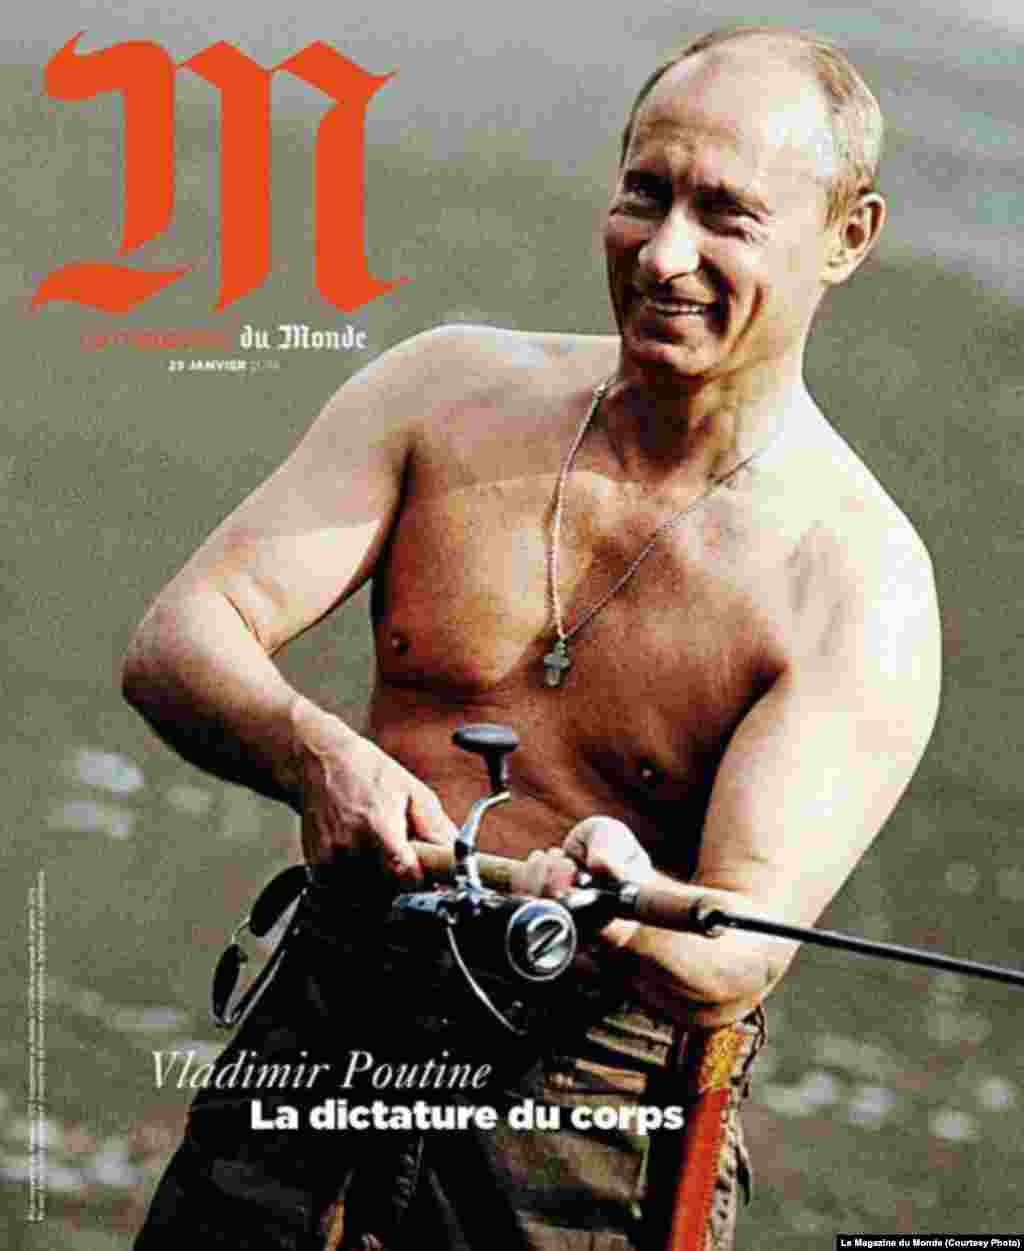 Путин на обложке